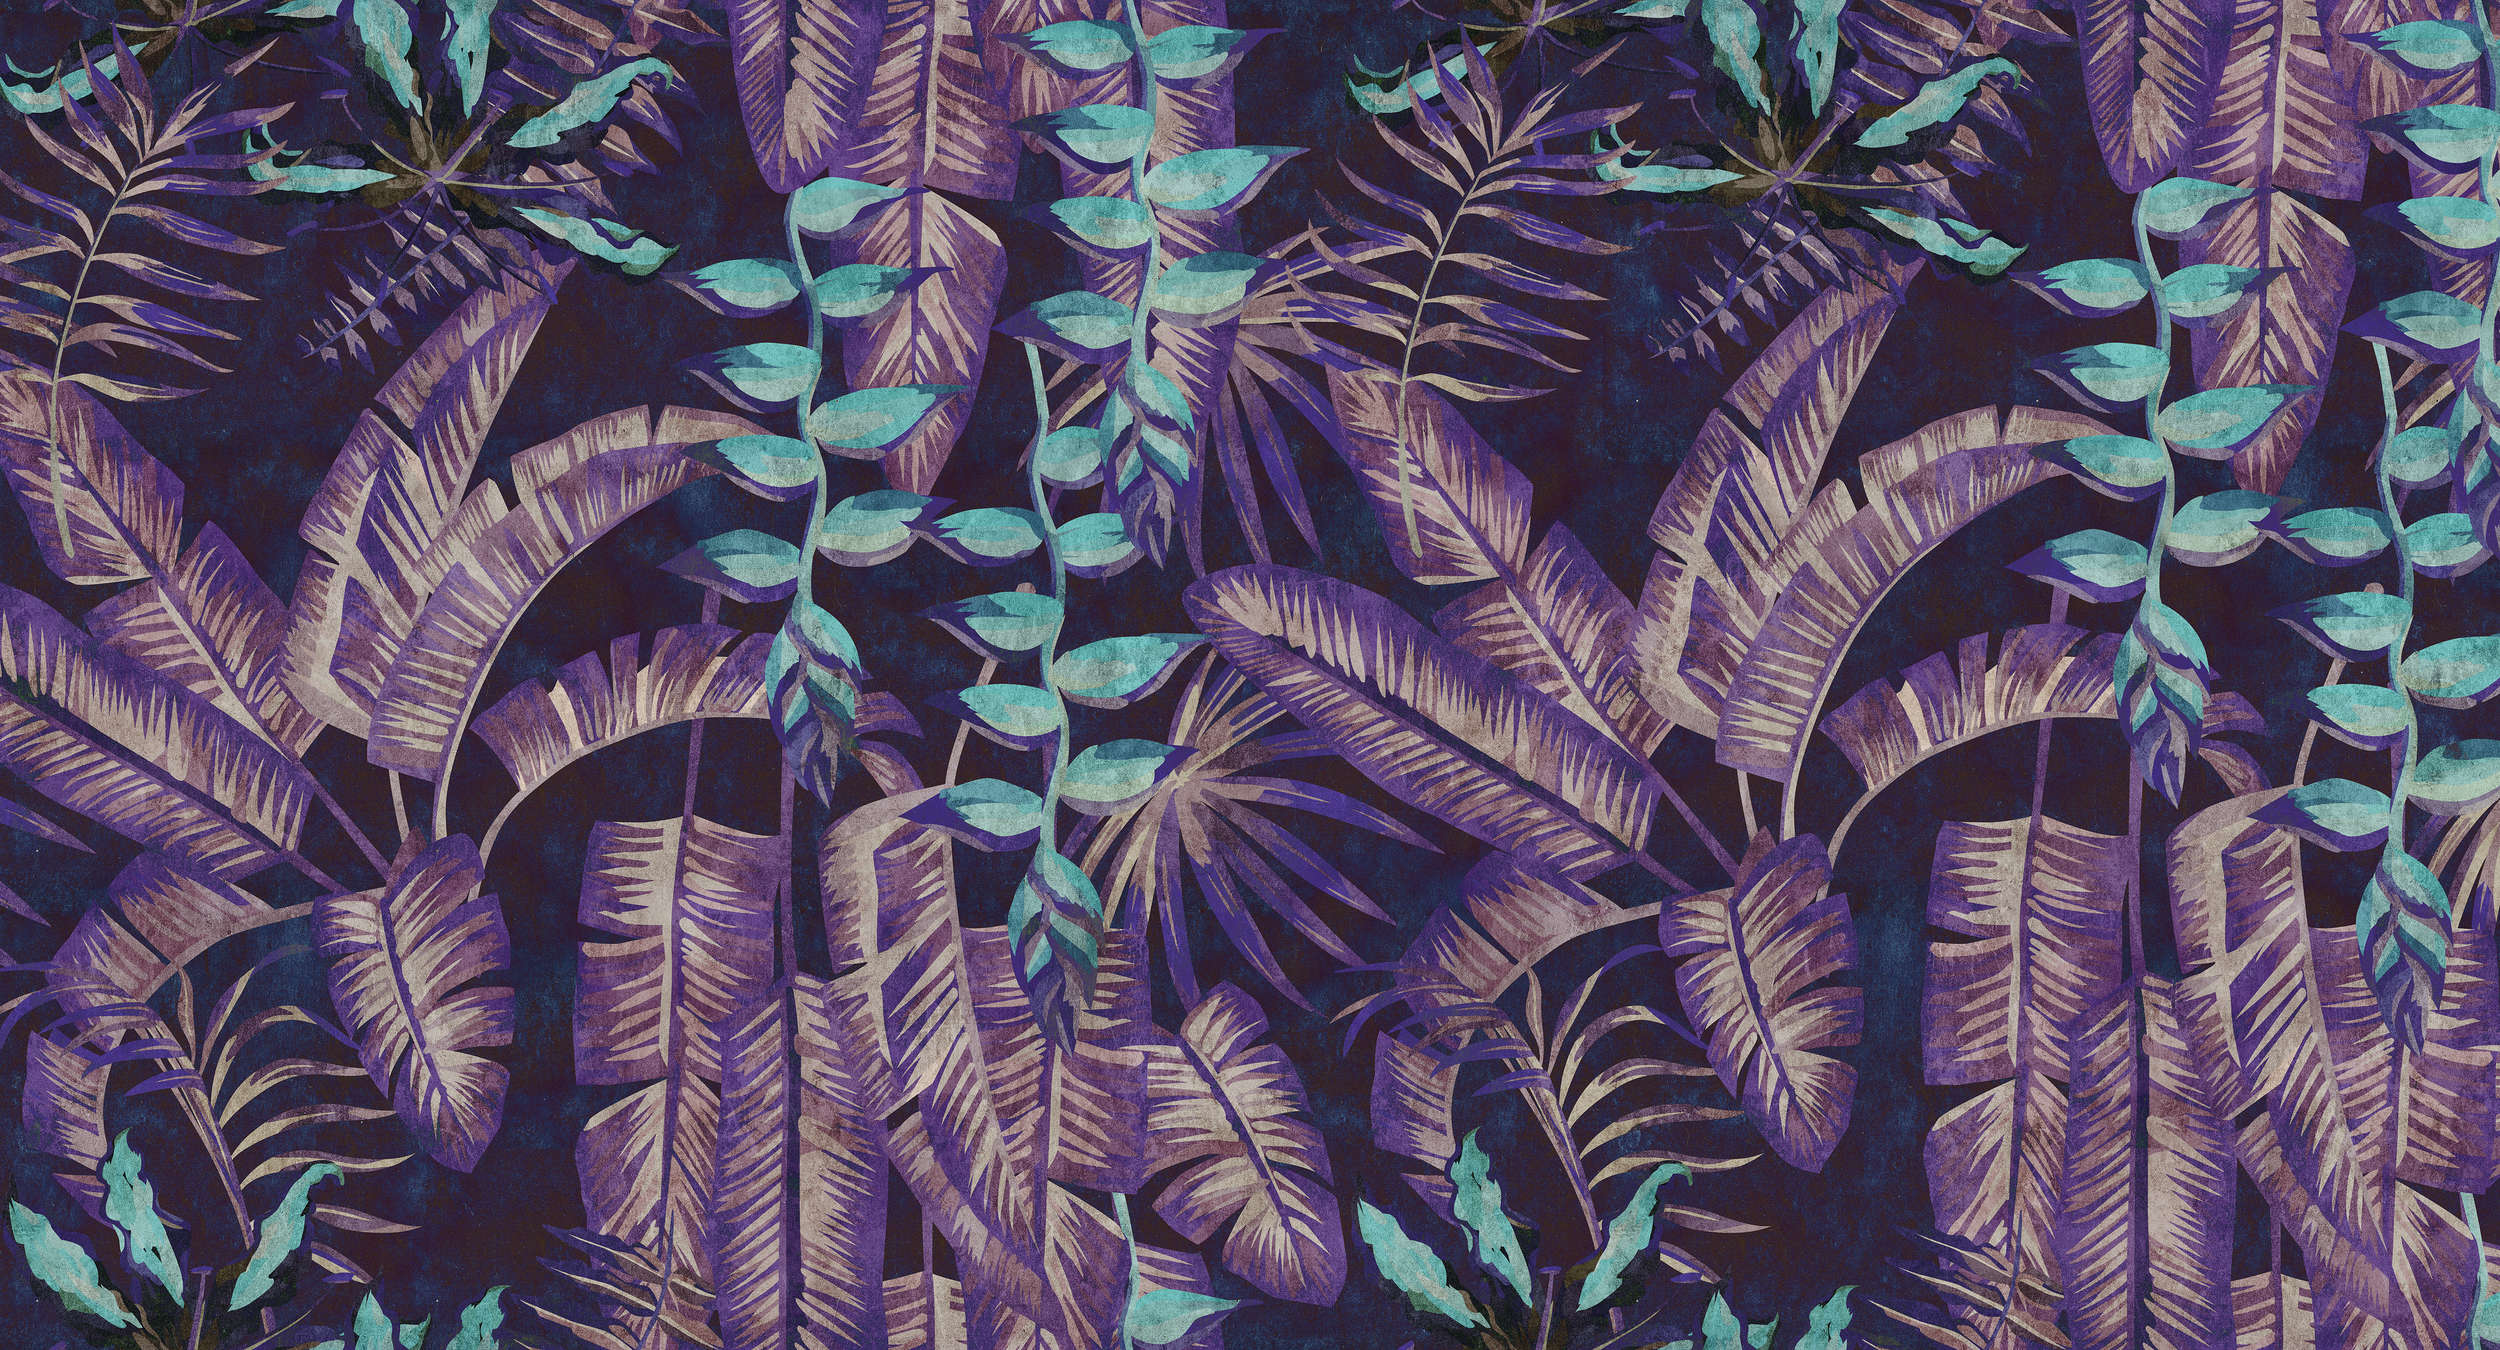             Tropicana 6 - papel pintado con impresión digital en estructura de papel secante con motivo selvático - turquesa, violeta | estructura no tejida
        